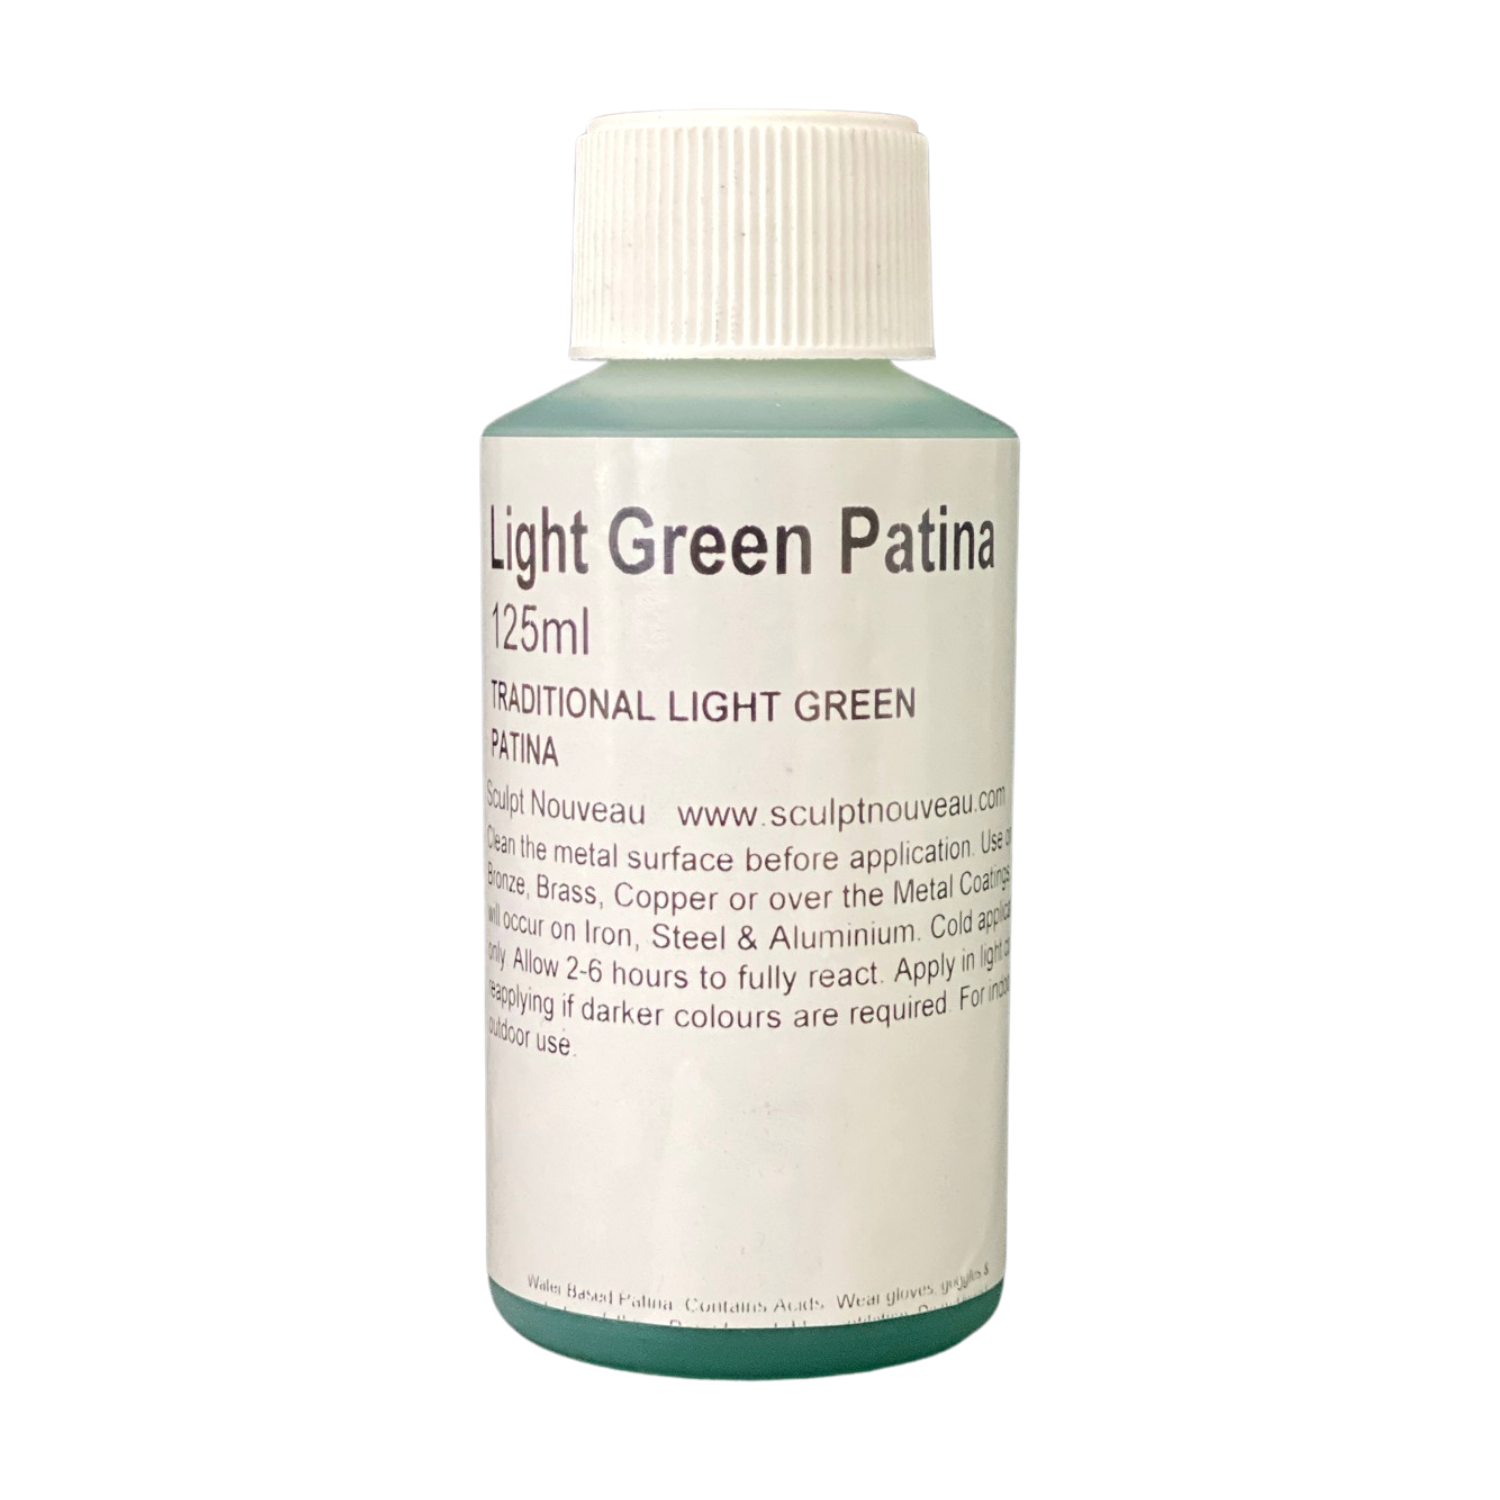 Light Green Patina